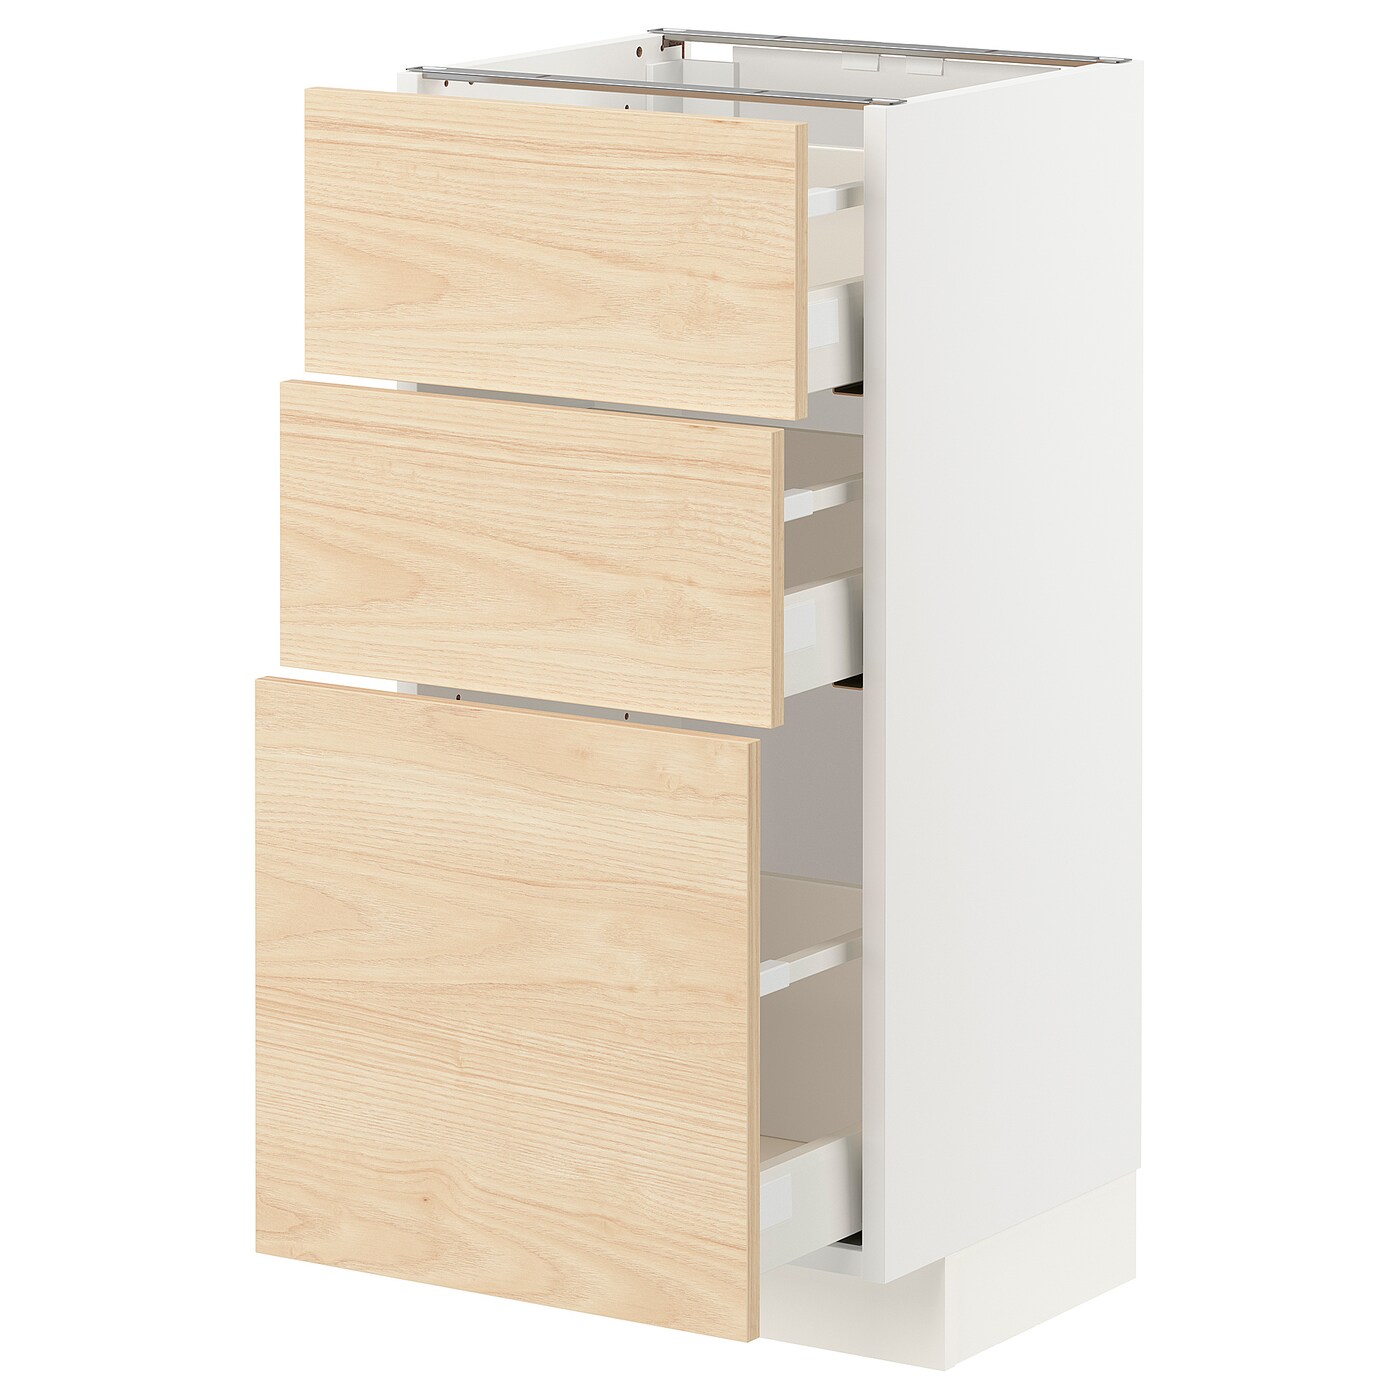 Напольный шкаф - IKEA METOD MAXIMERA, 88x40x39см, белый/светлый ясень, МЕТОД МАКСИМЕРА ИКЕА